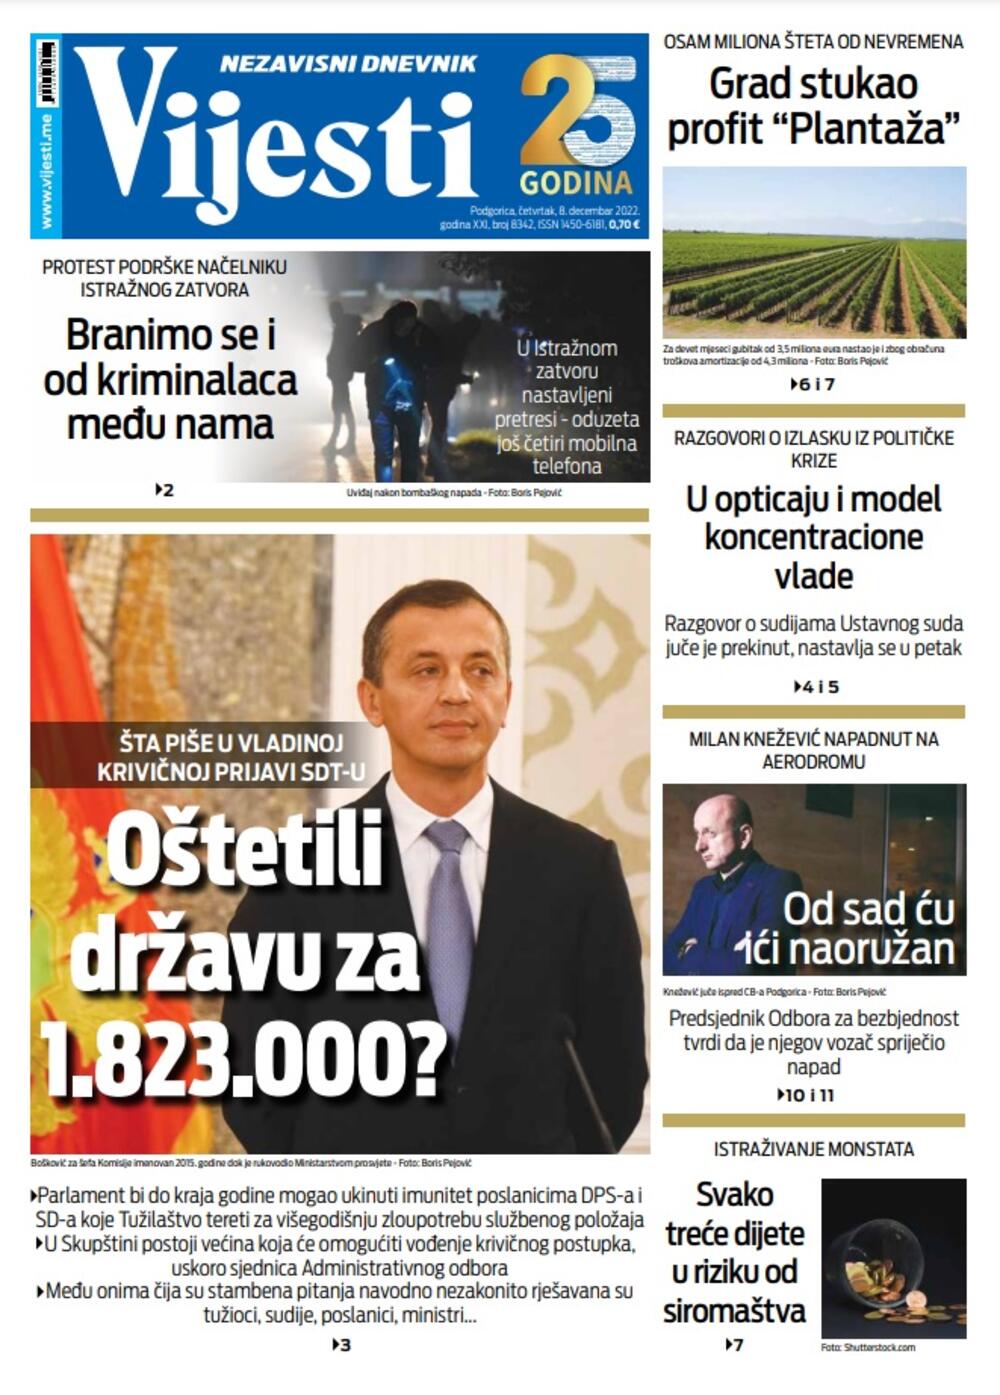 Naslovna strana "Vijesti" za 8. decembar 2022. godinu, Foto: Vijesti